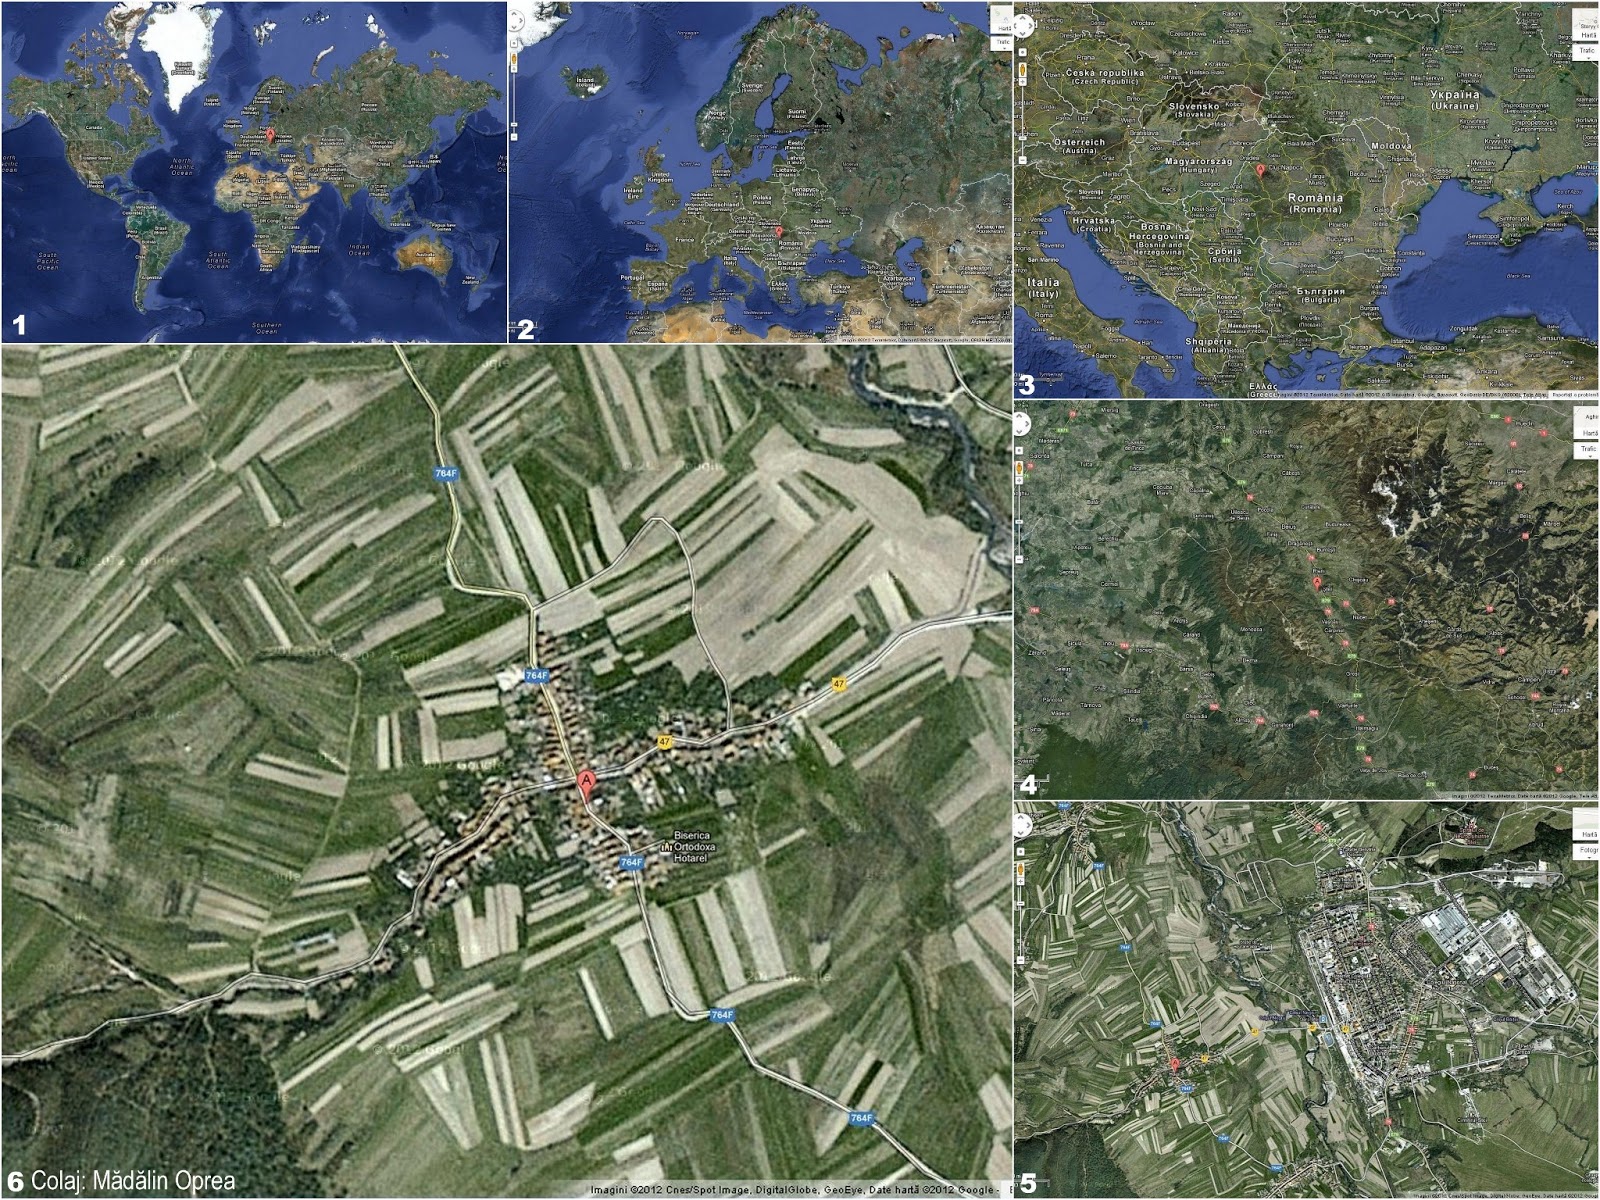 Hotarel, Bihor, Romania imagini din satelit via Google Maps ; satul Hotarel comuna Lunca judetul Bihor Romania